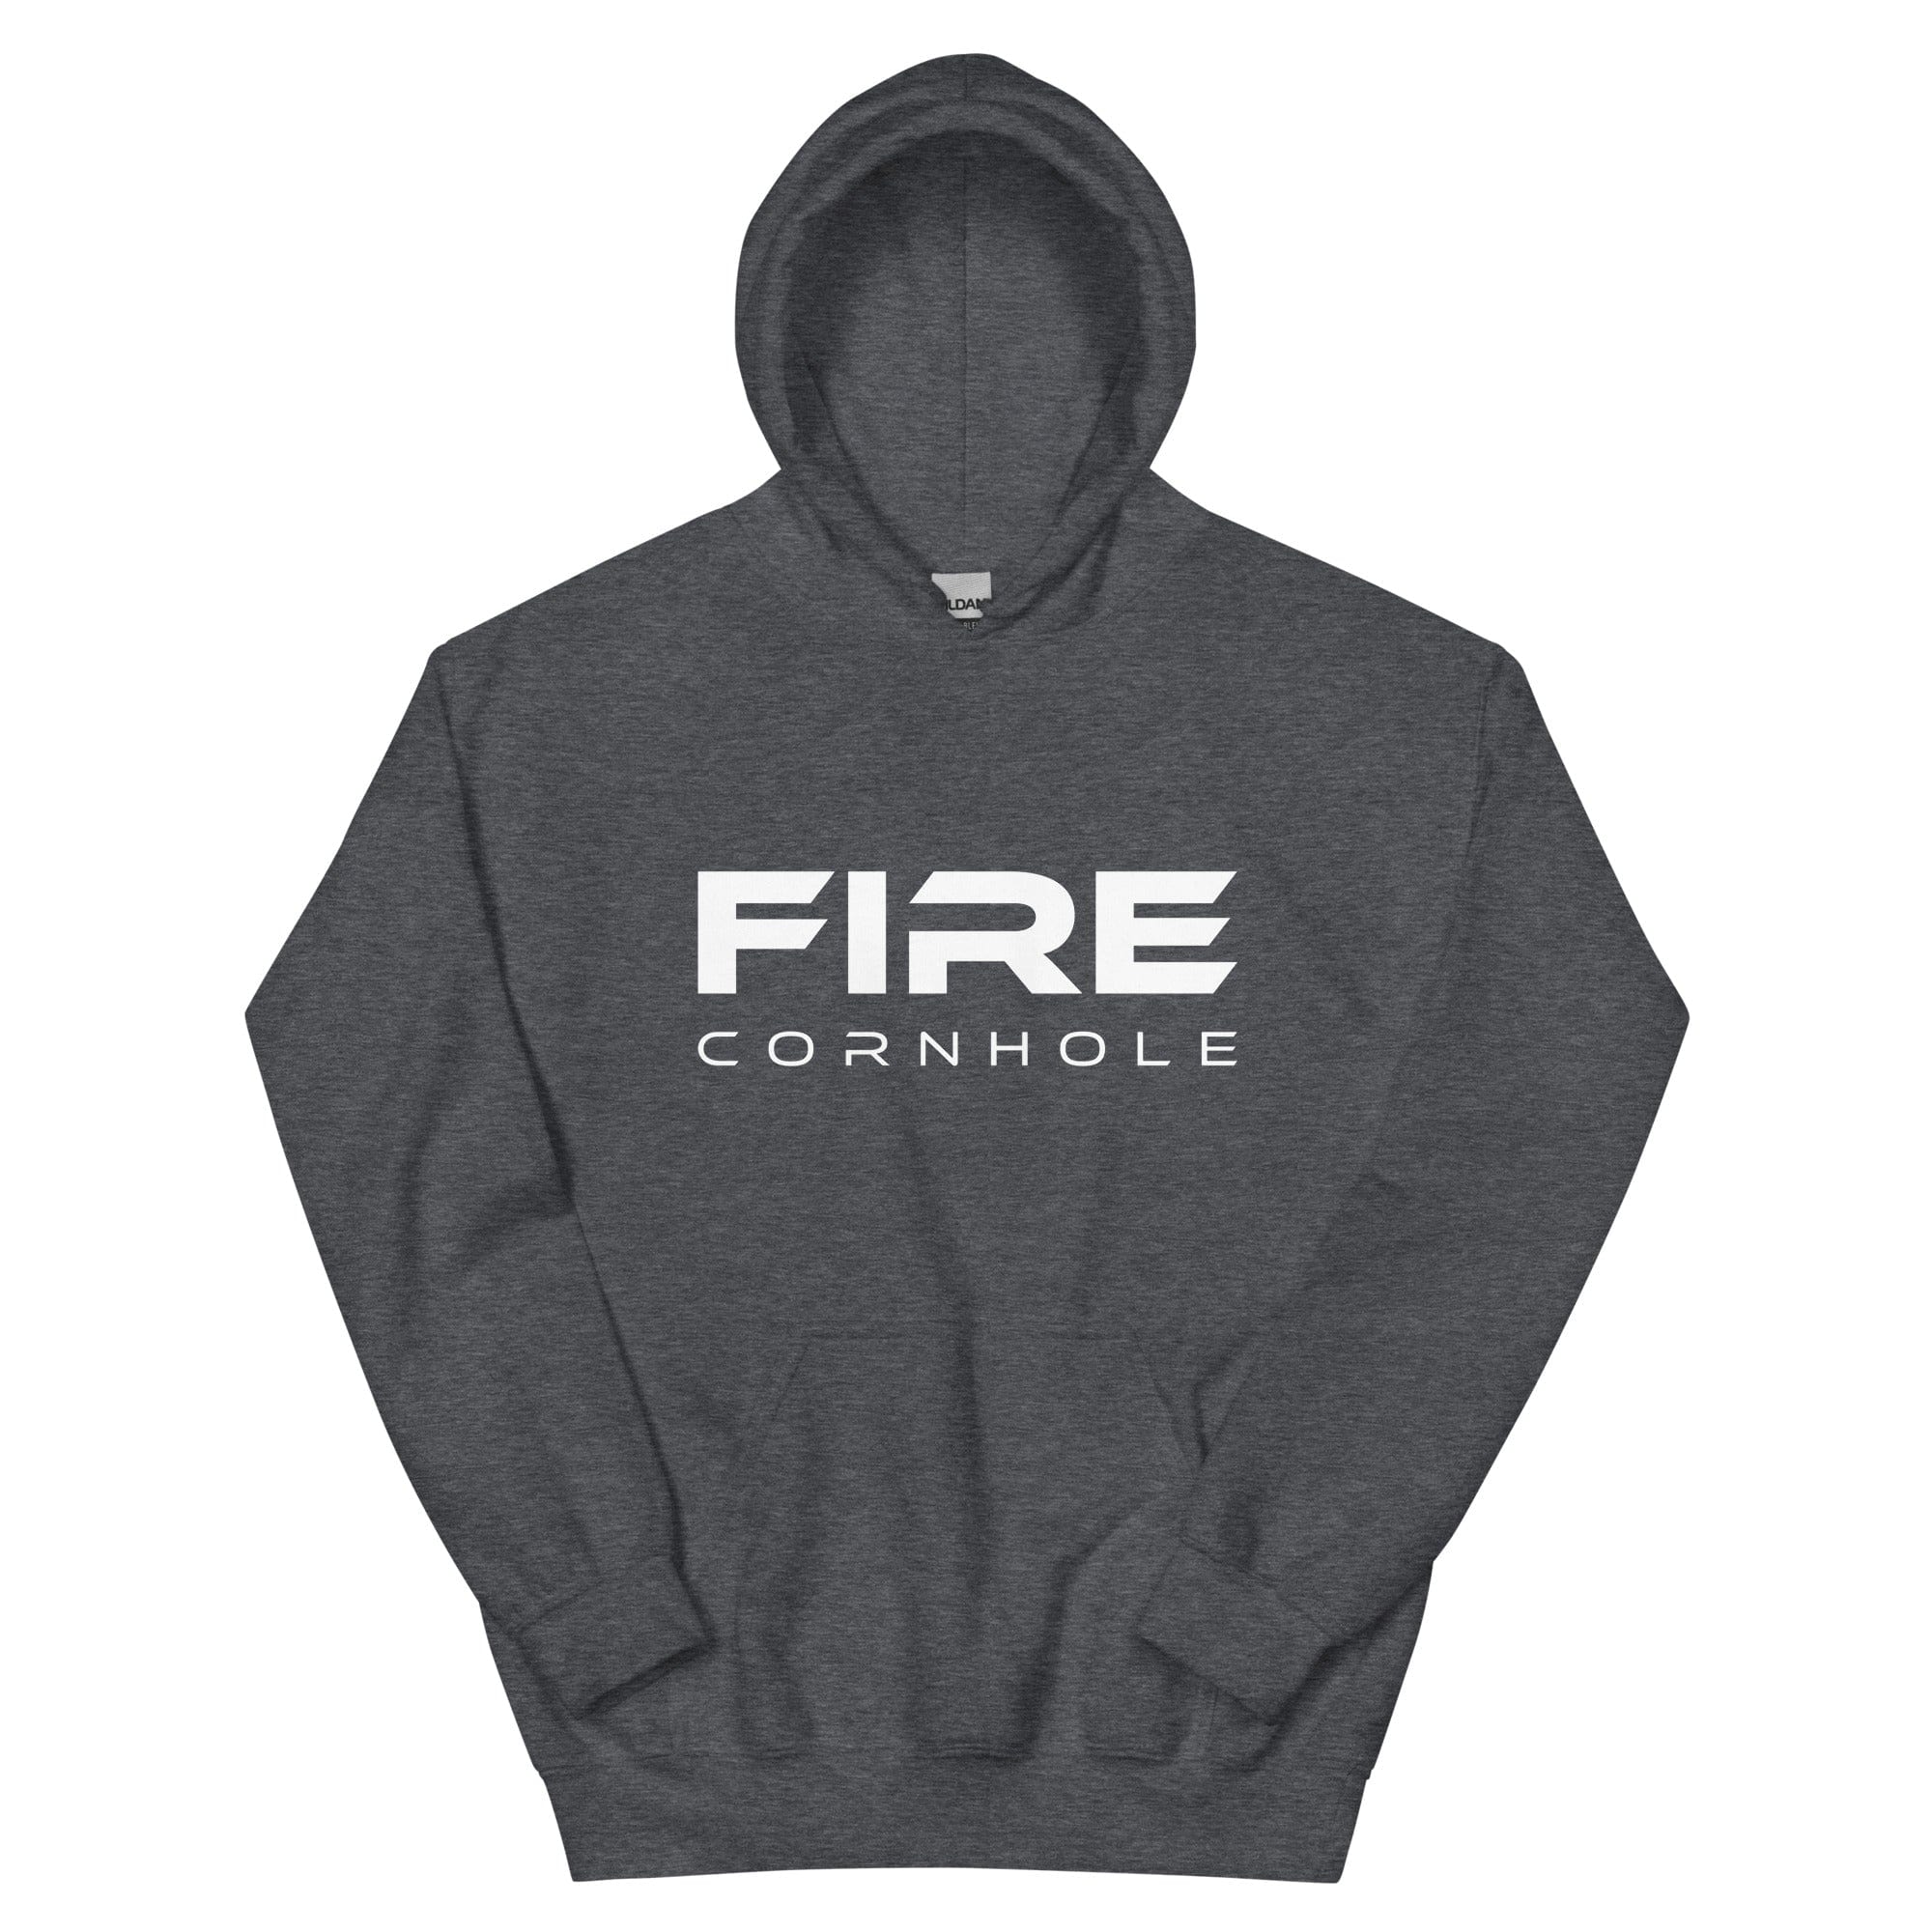 Dark grey unisex cotton hoodie with Fire Cornhole logo in white